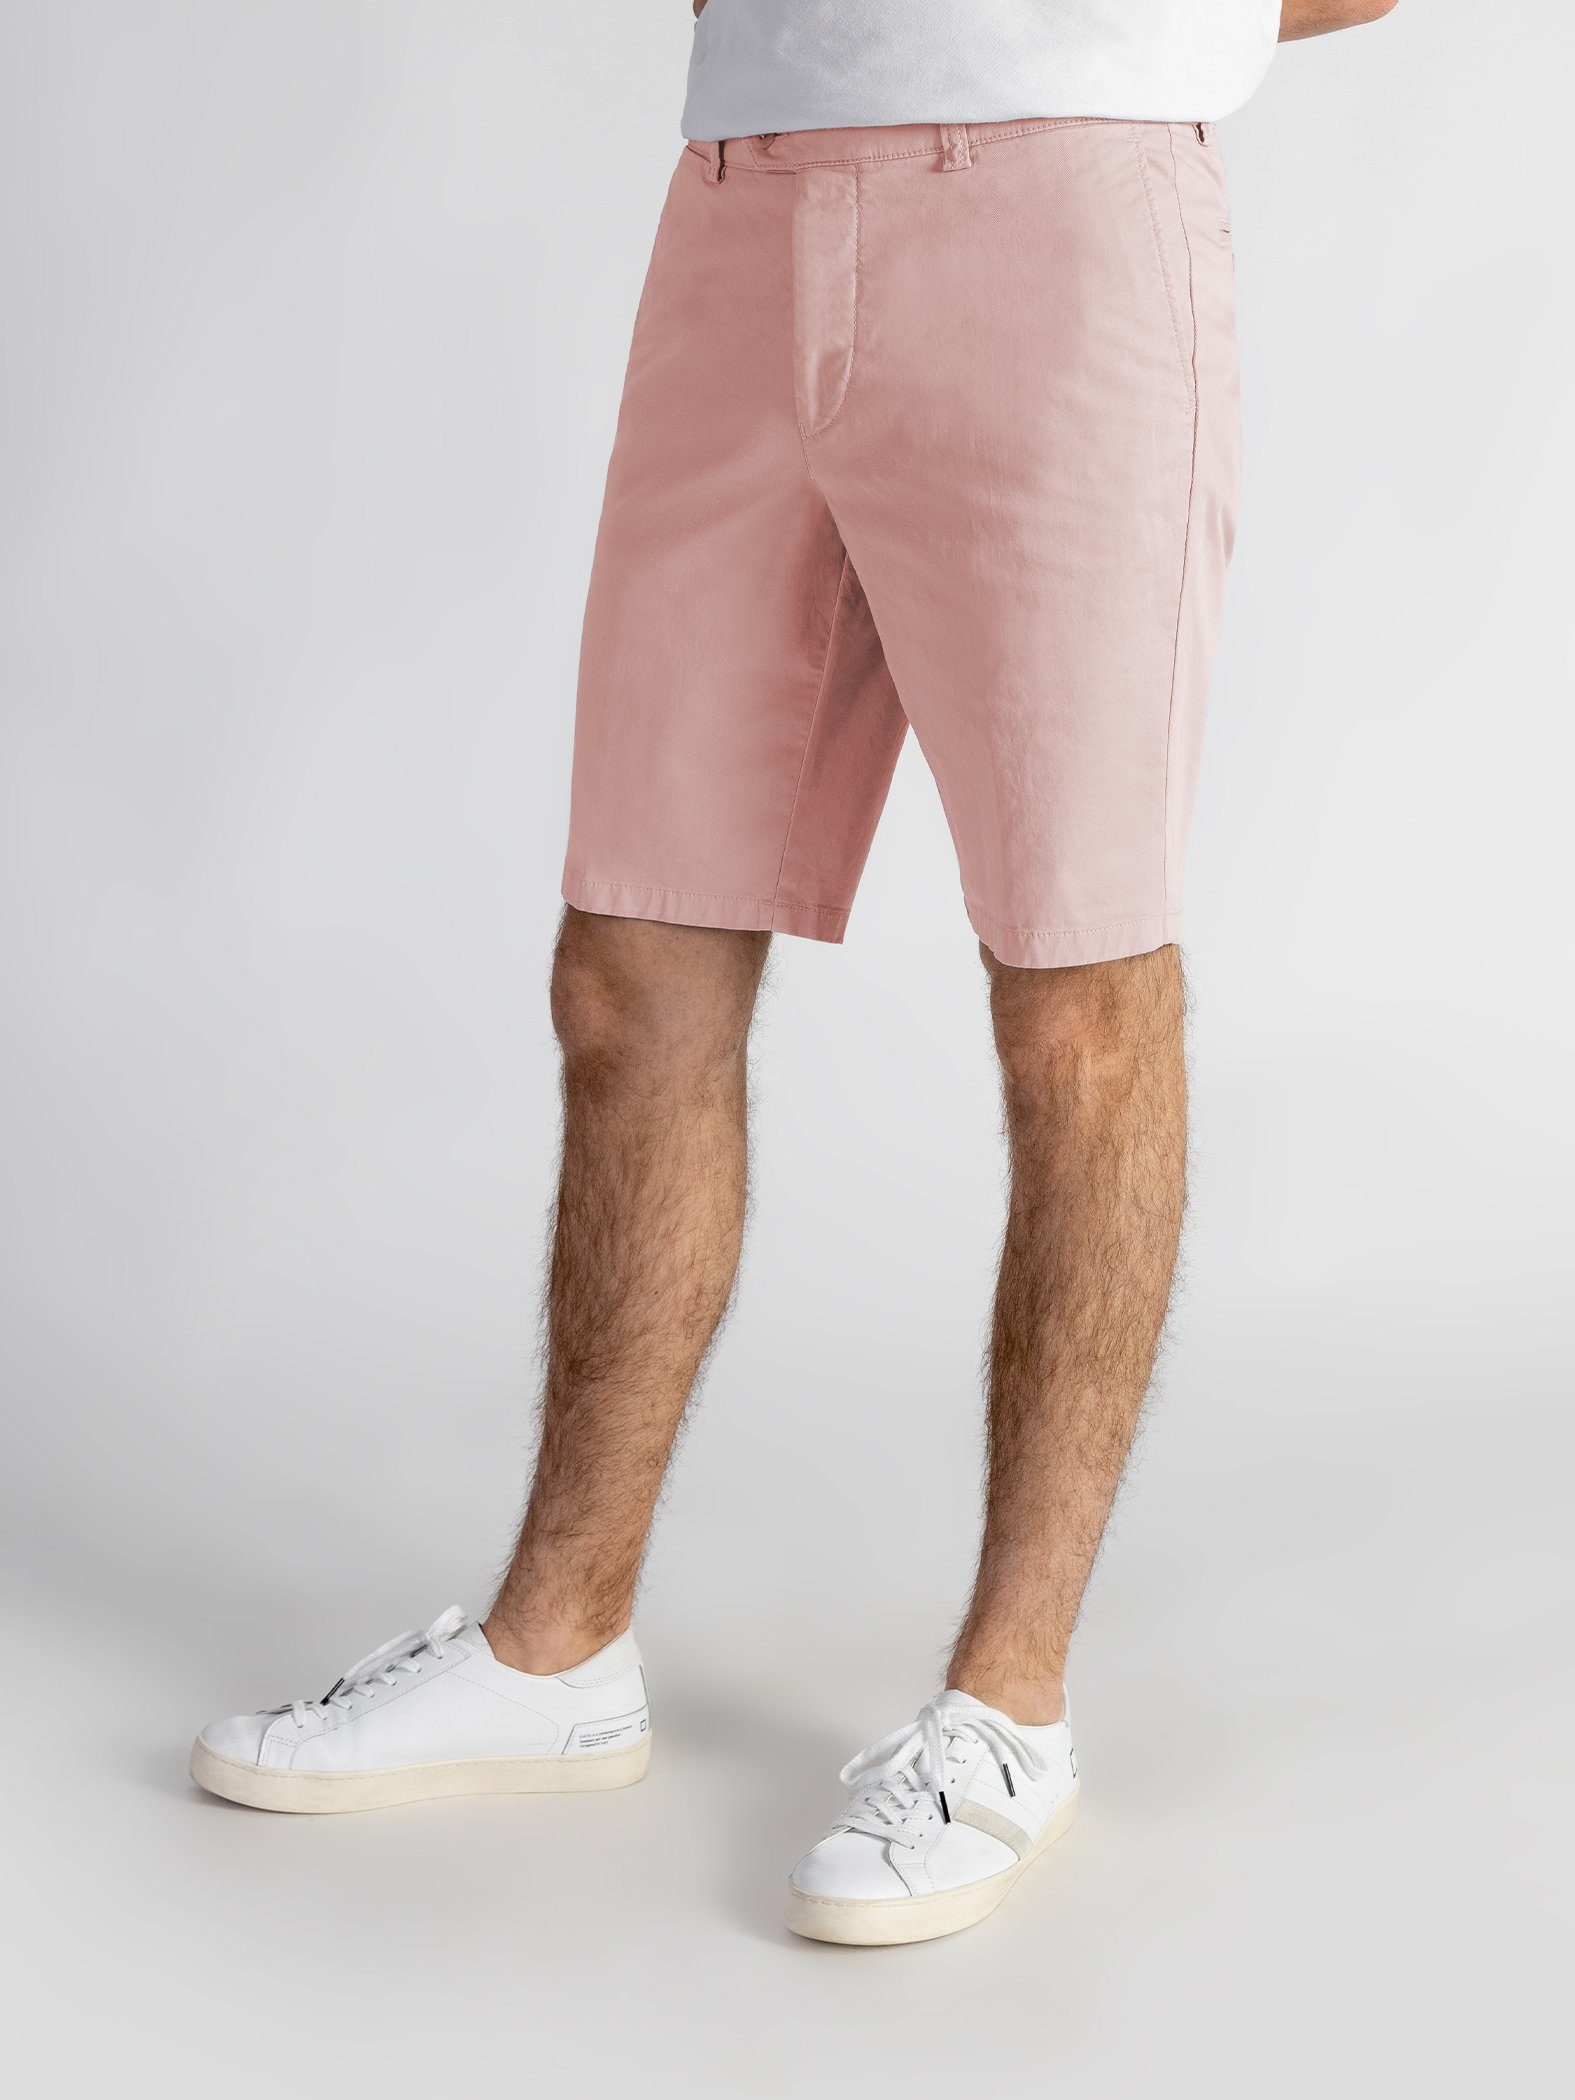 Bund, TwoMates Farbauswahl, Shorts Shorts elastischem rosa GOTS-zertifiziert mit